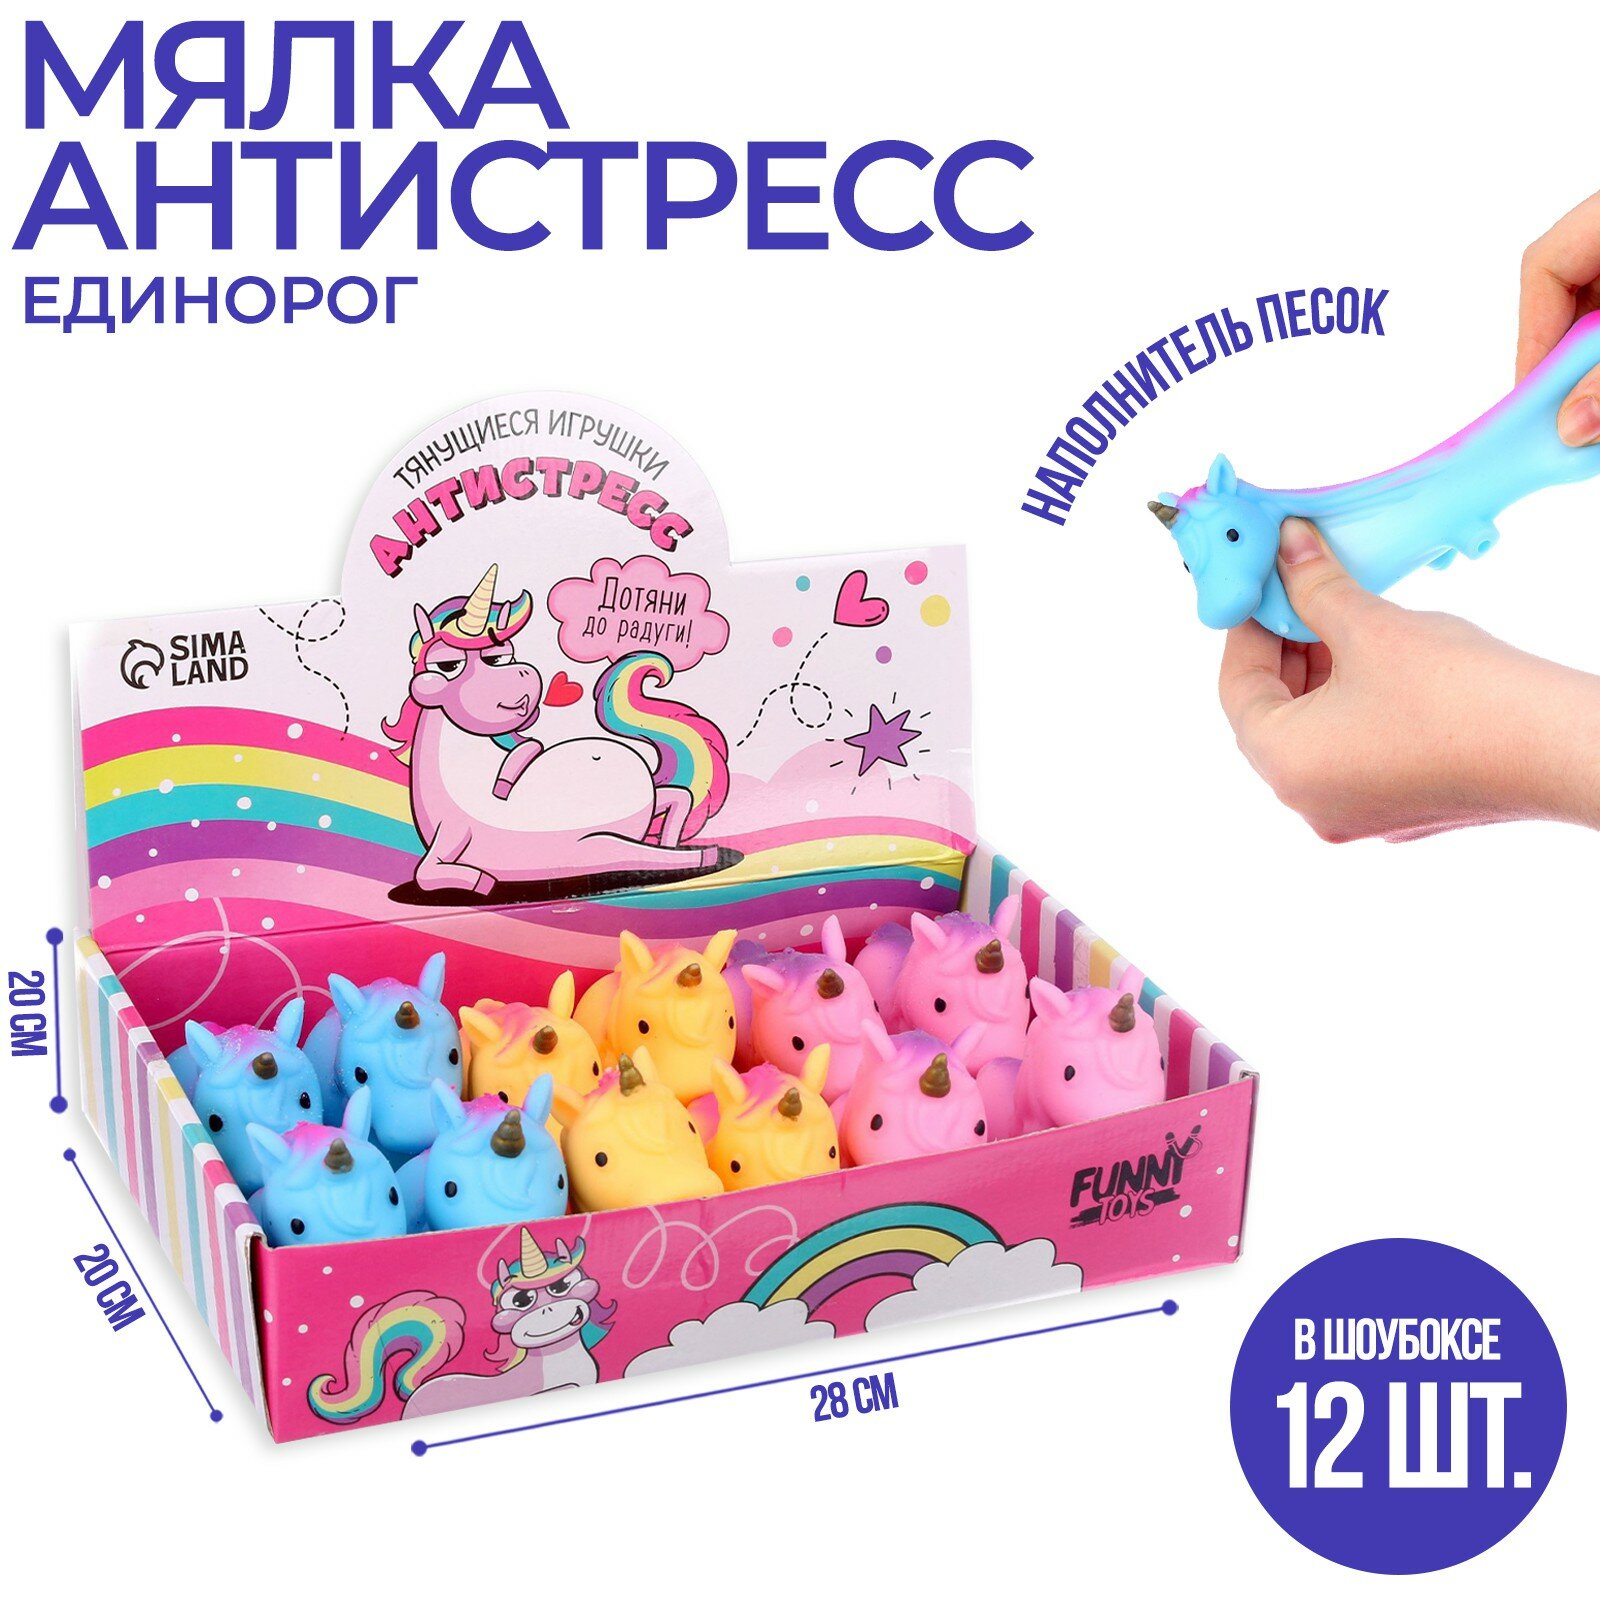 "Антистресс Единороги" - тянущиеся игрушки для детей от 4 лет